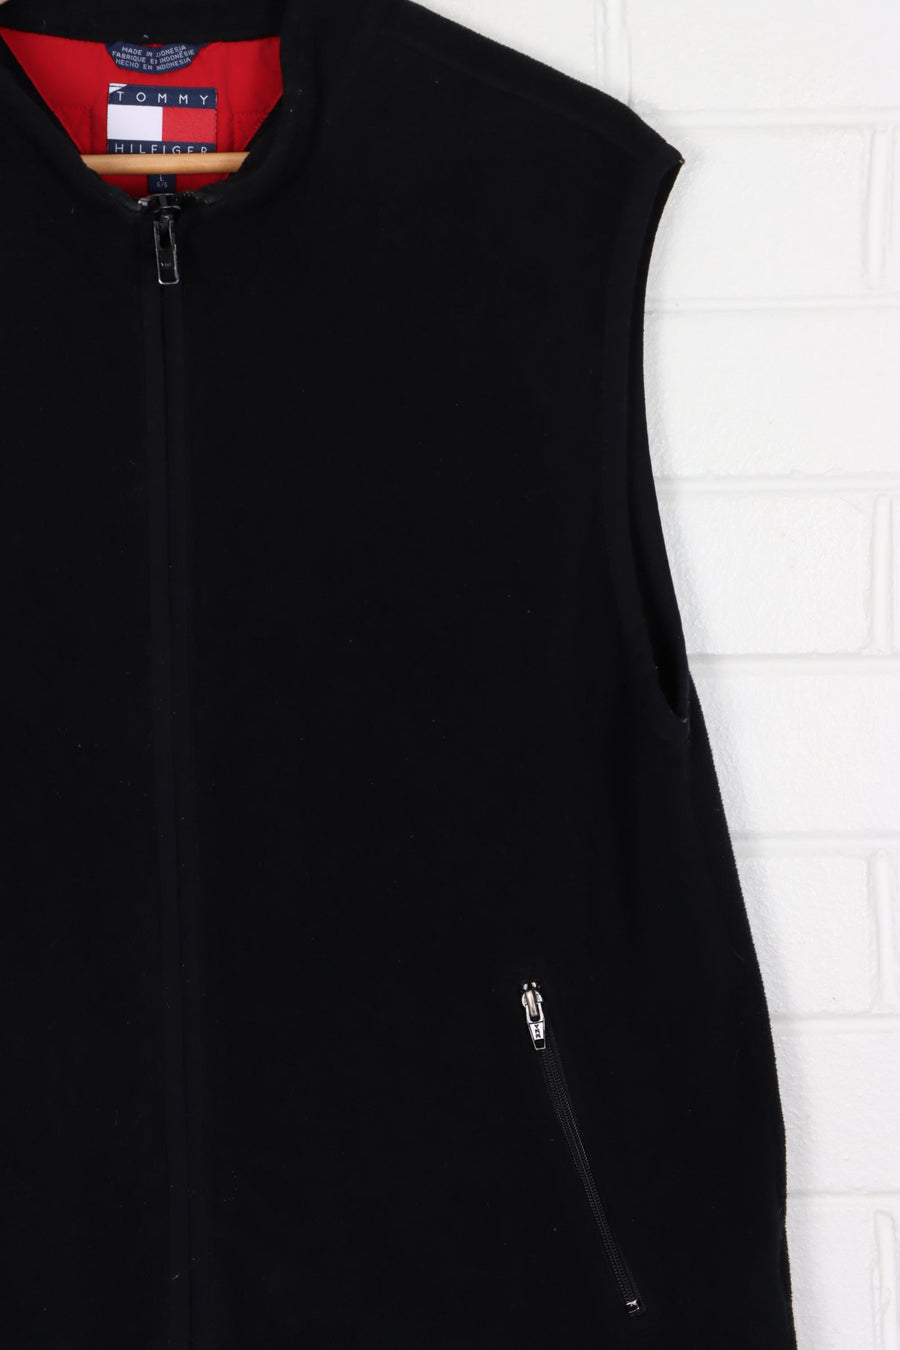 TOMMY HILFIGER Zip Pockets Black Fleece Vest (L)